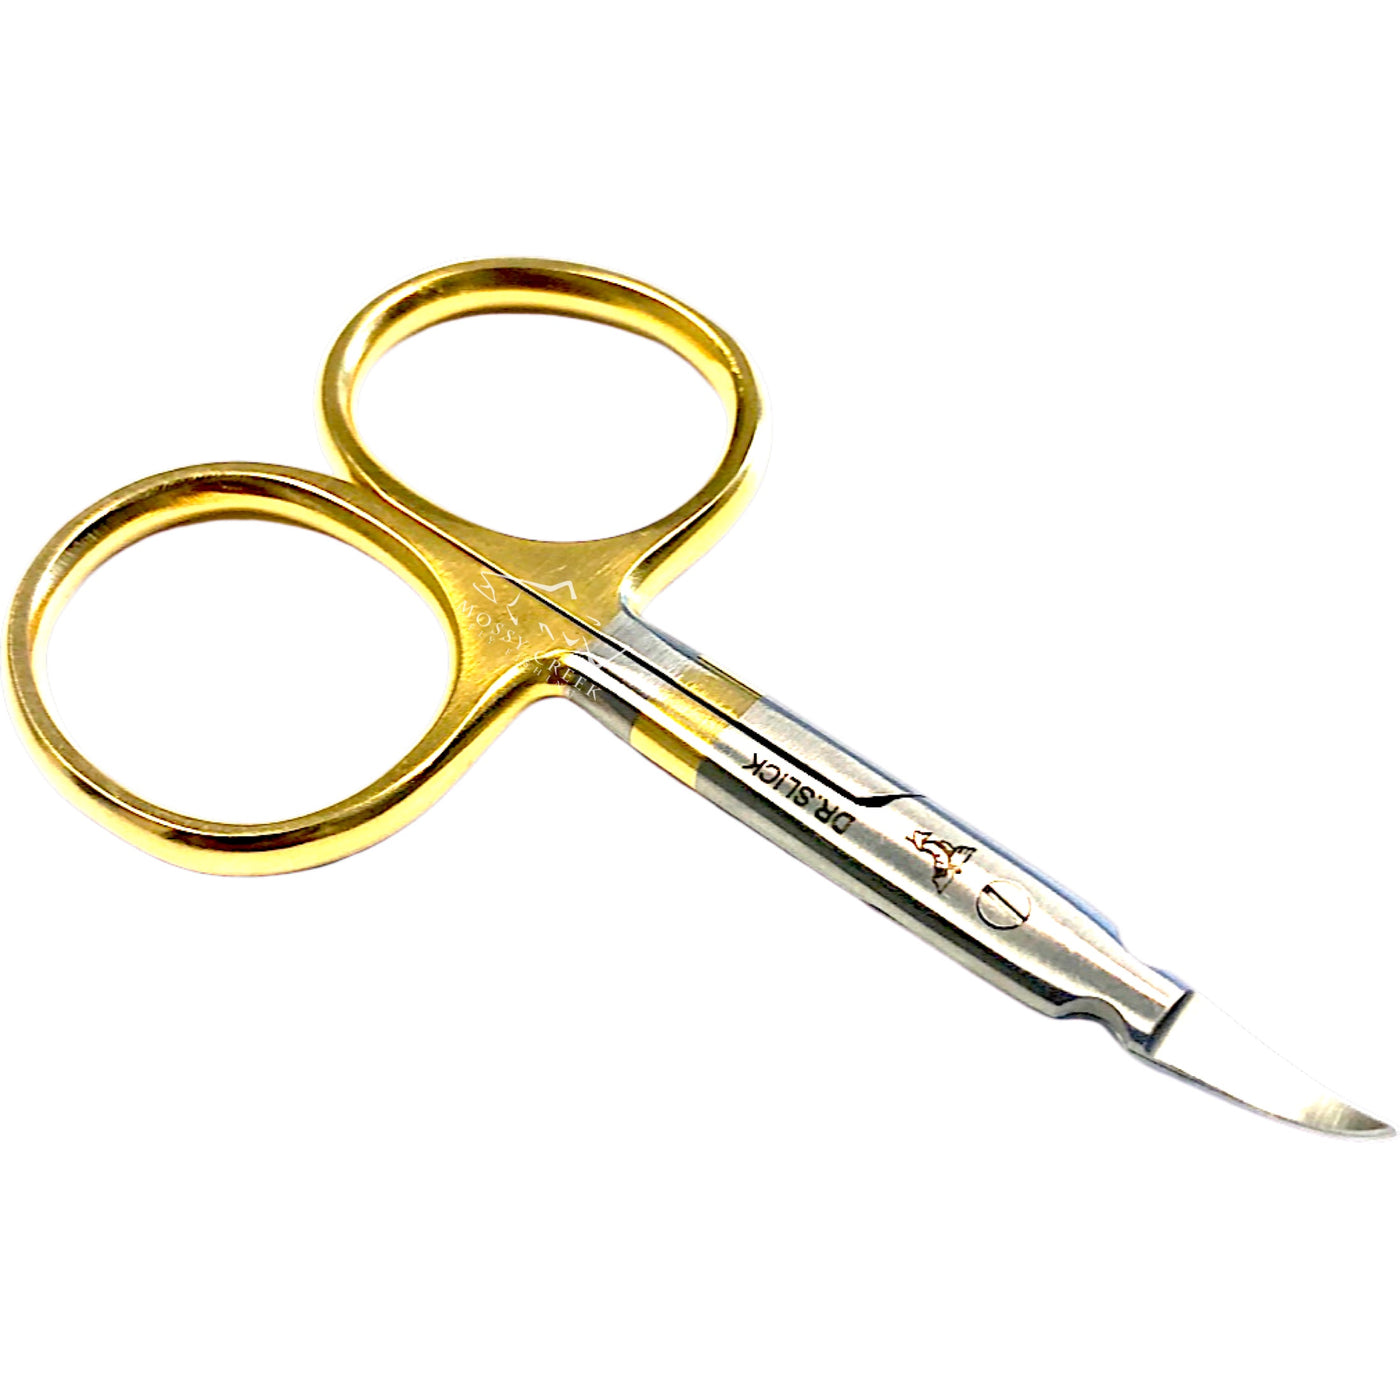 Dr. Slick 3 1/2 Arrow Scissor Curved